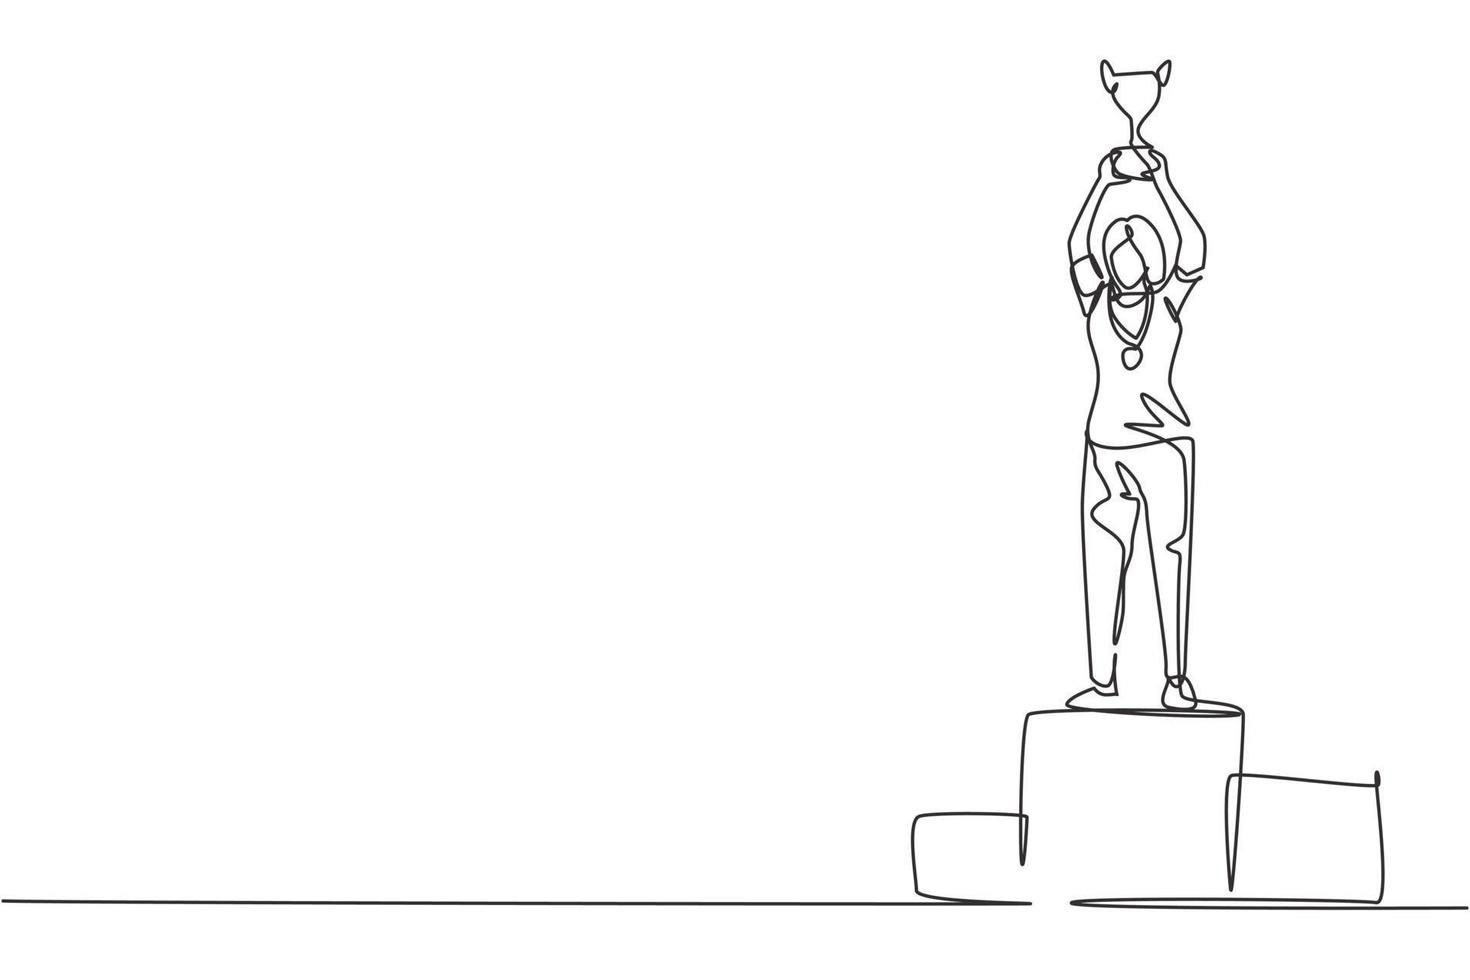 Atleta femenina de dibujo continuo de una línea con camiseta deportiva levantando trofeo de oro con ambas manos en el podio. celebrando la victoria del campeonato. Ilustración gráfica de vector de diseño de dibujo de una sola línea